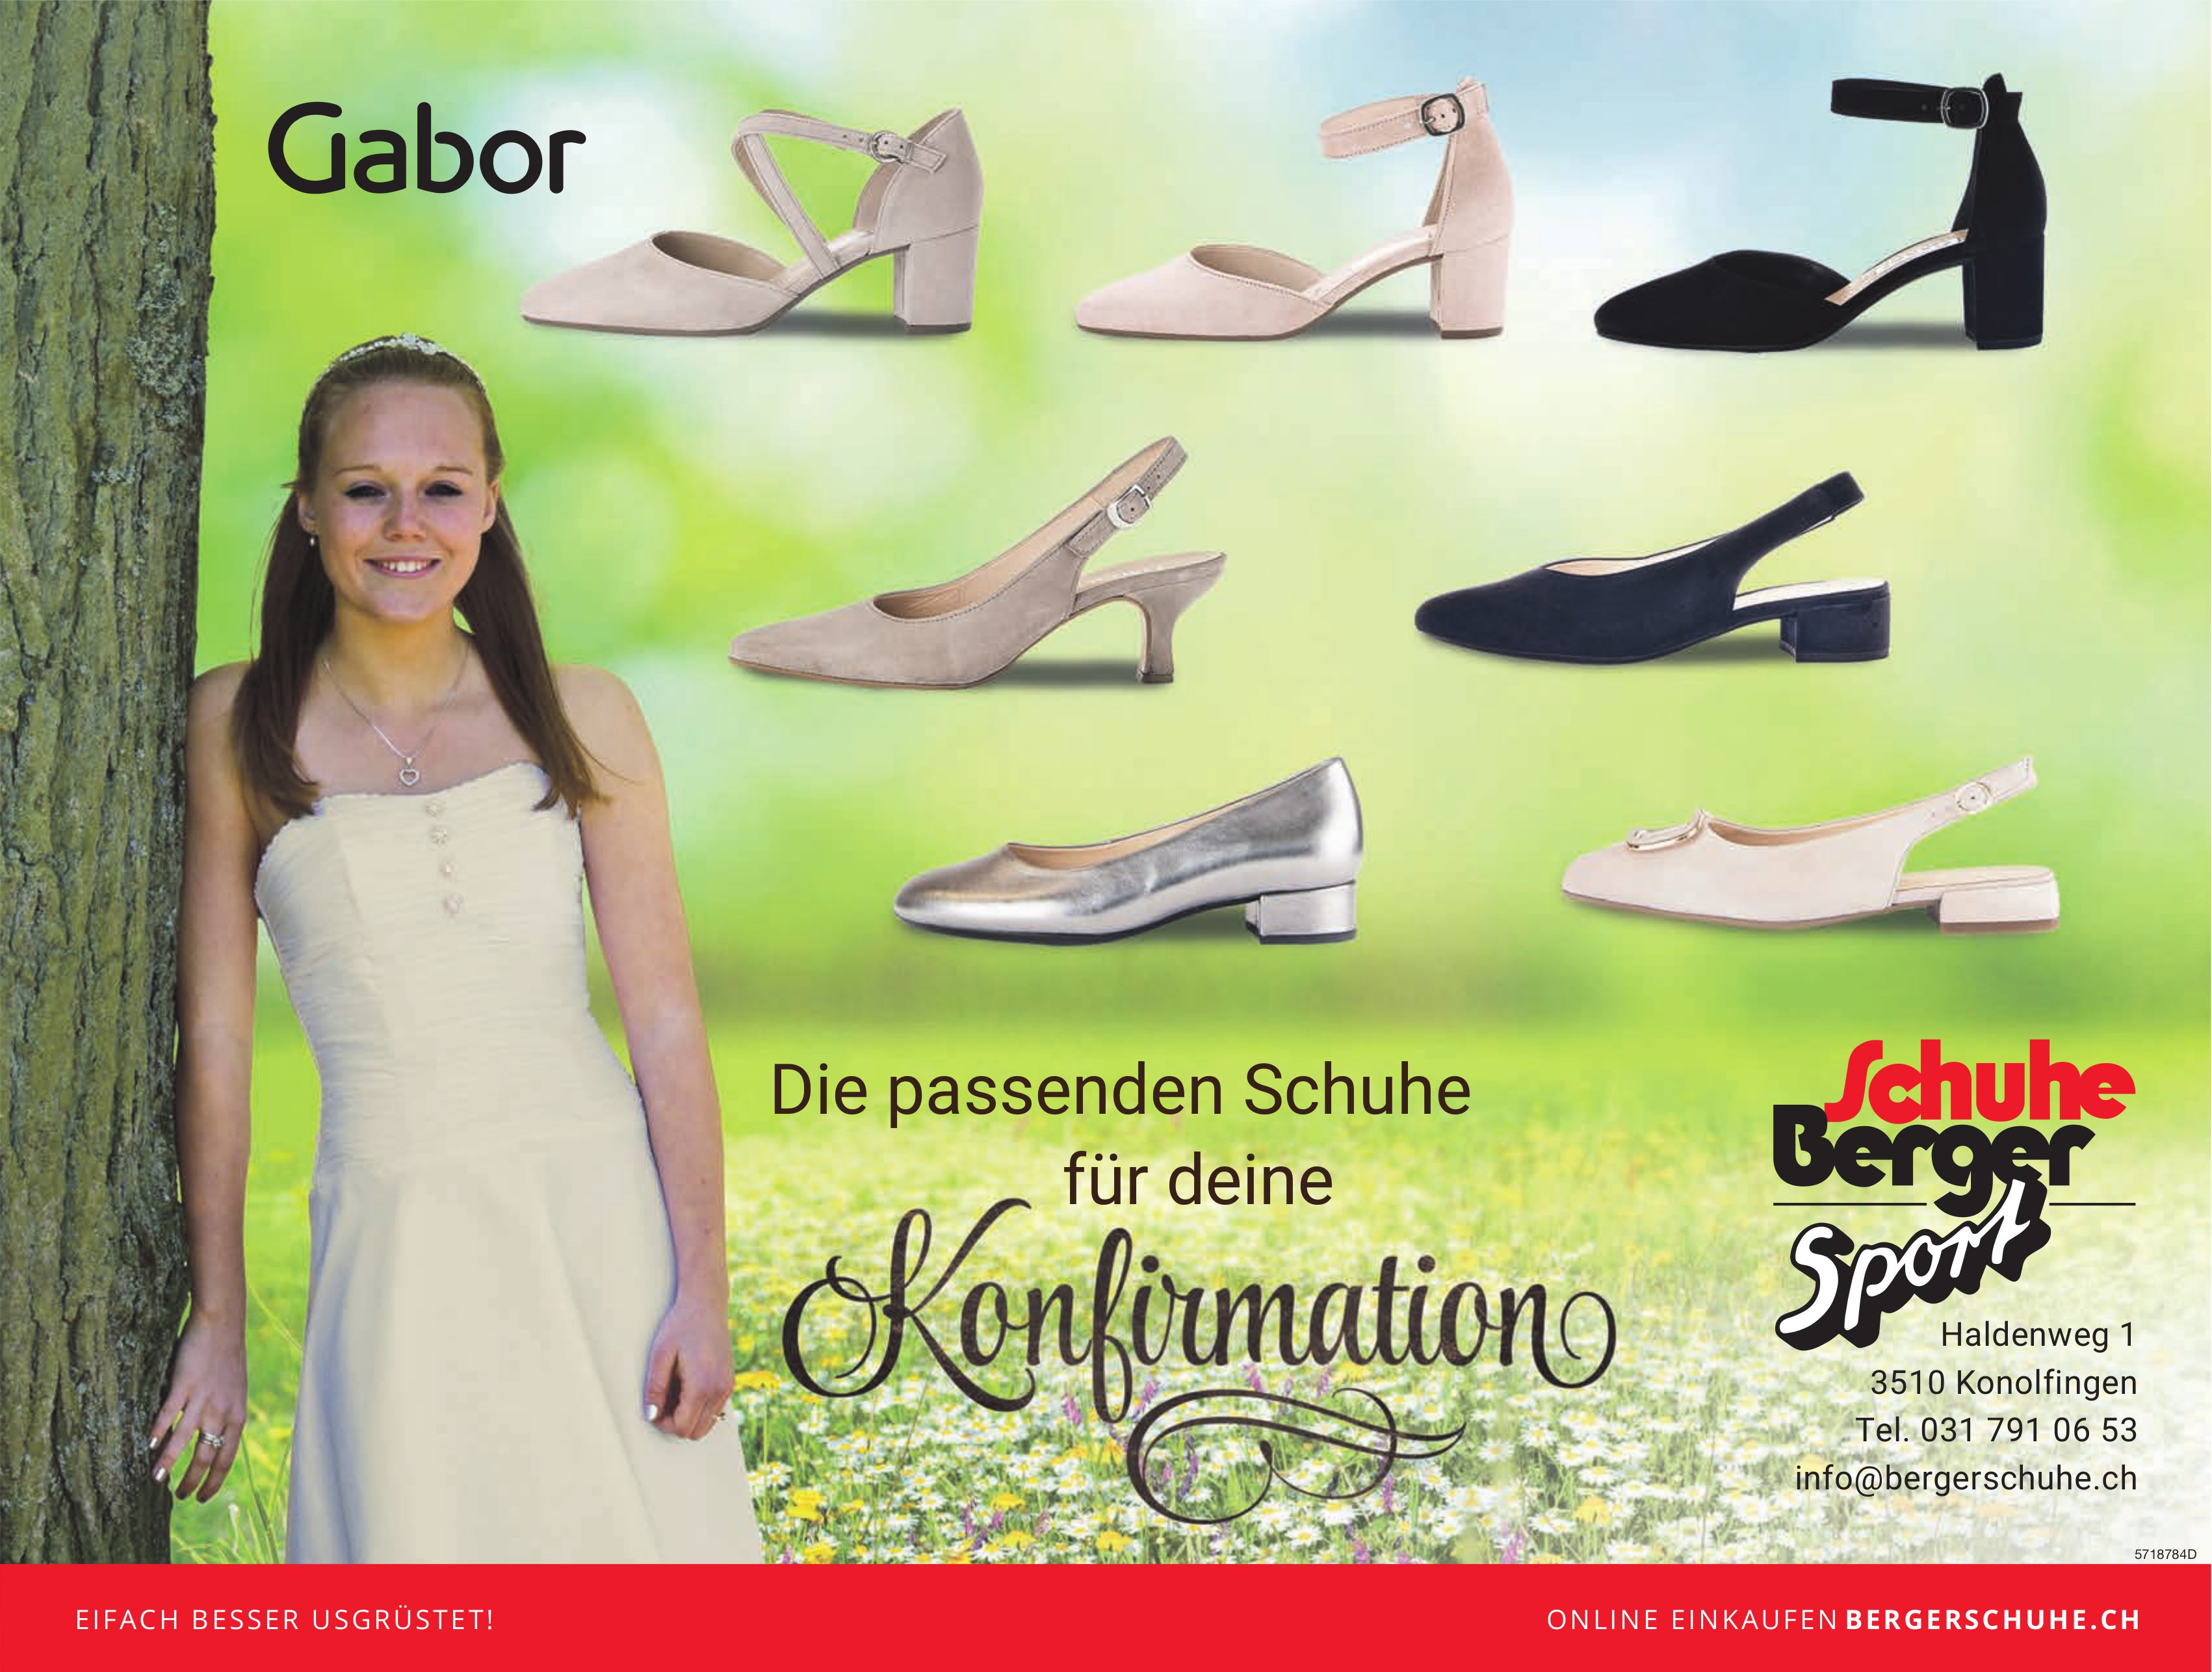 Schuhe Berger Sport, Konolfingen - Die passenden Schuhe für Deine Konfirmation